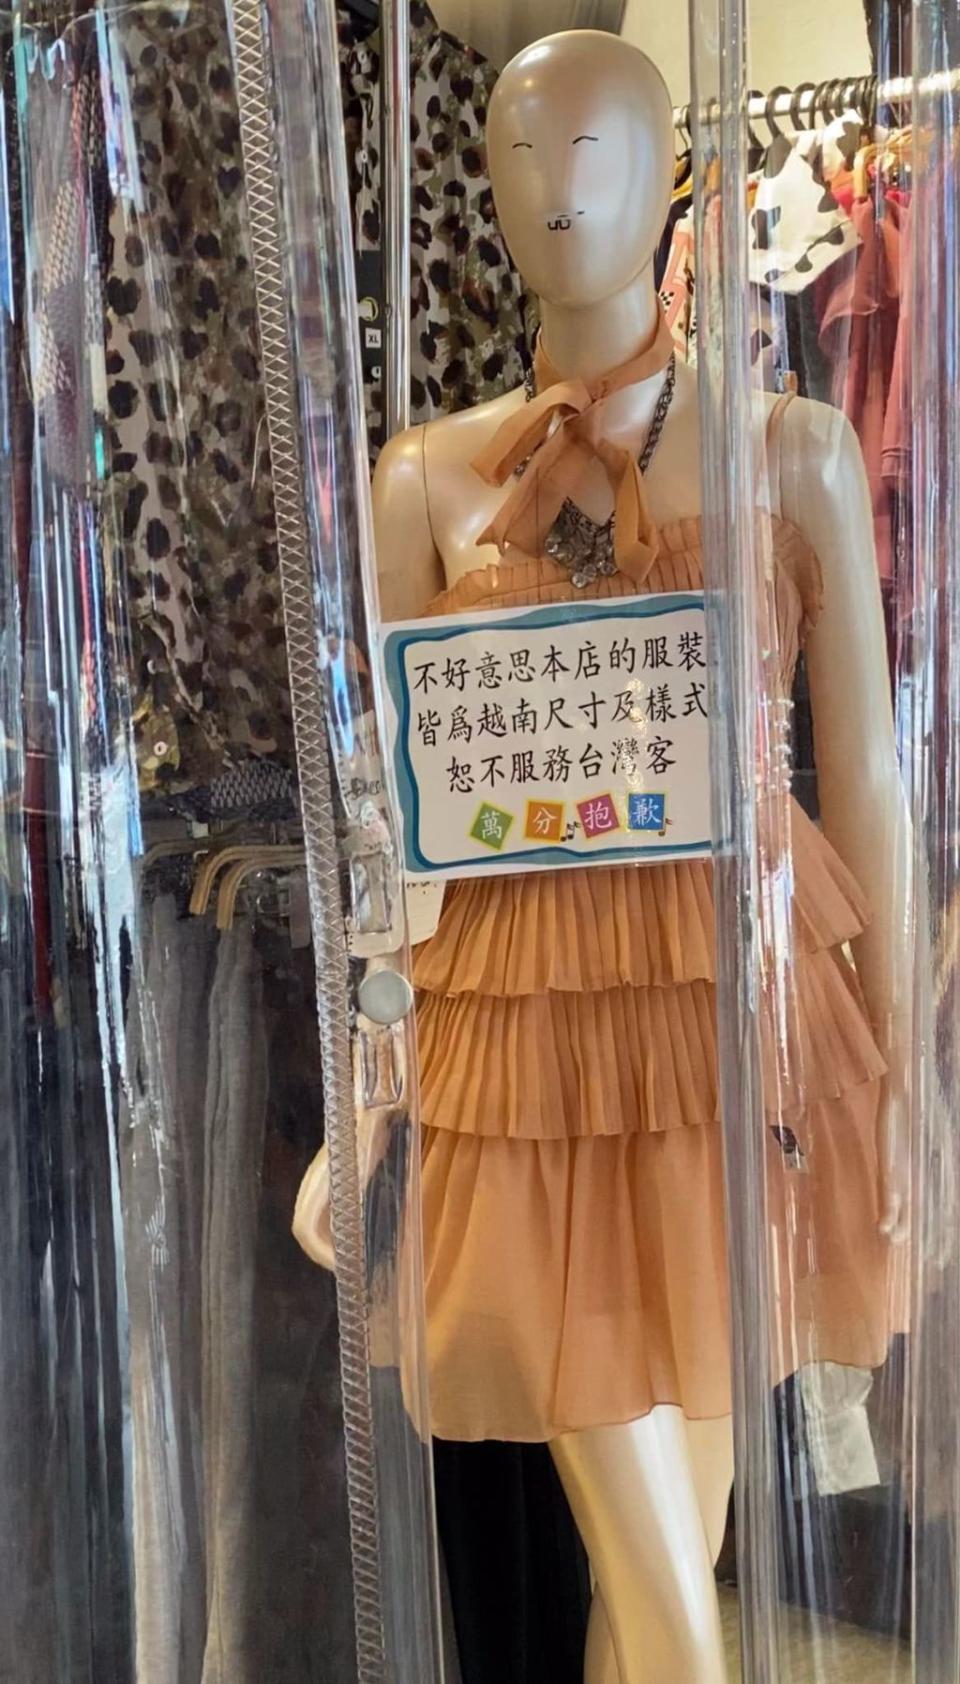 越南服飾店稱店內服裝都是越南樣式、尺寸，所以拒絕服務台灣人，引發討論，也有在越南台人出面解釋原因。(圖／爆廢公社公開版)